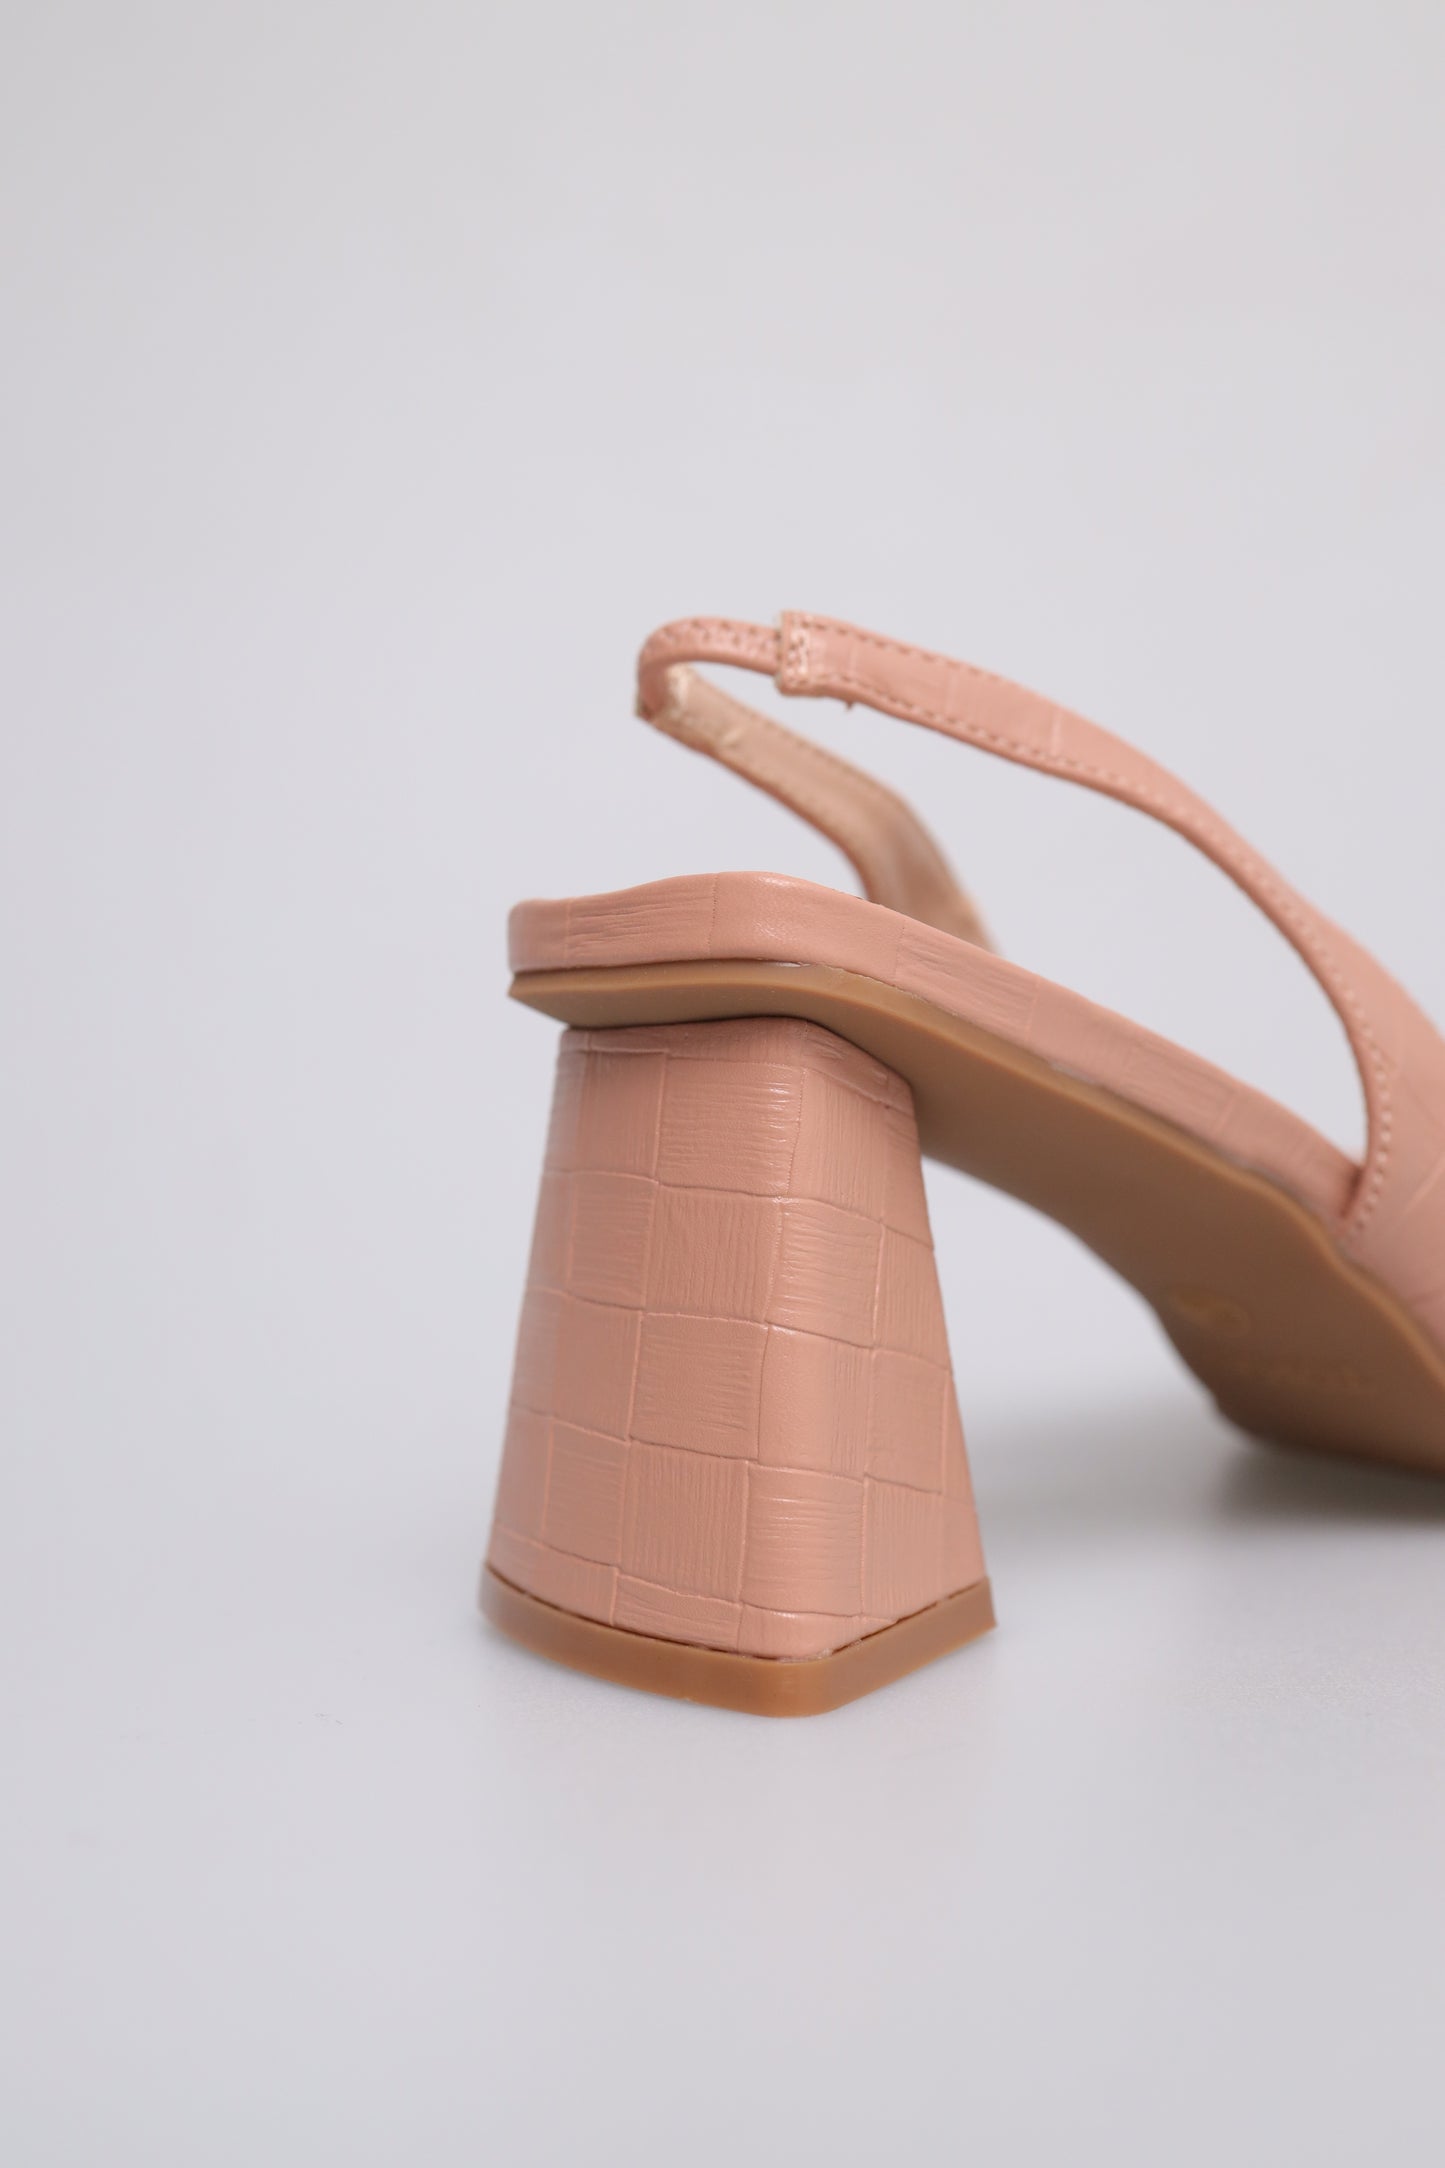 Tomaz FL046 Ladies Pointed Toe Slingback Heels (Pink)